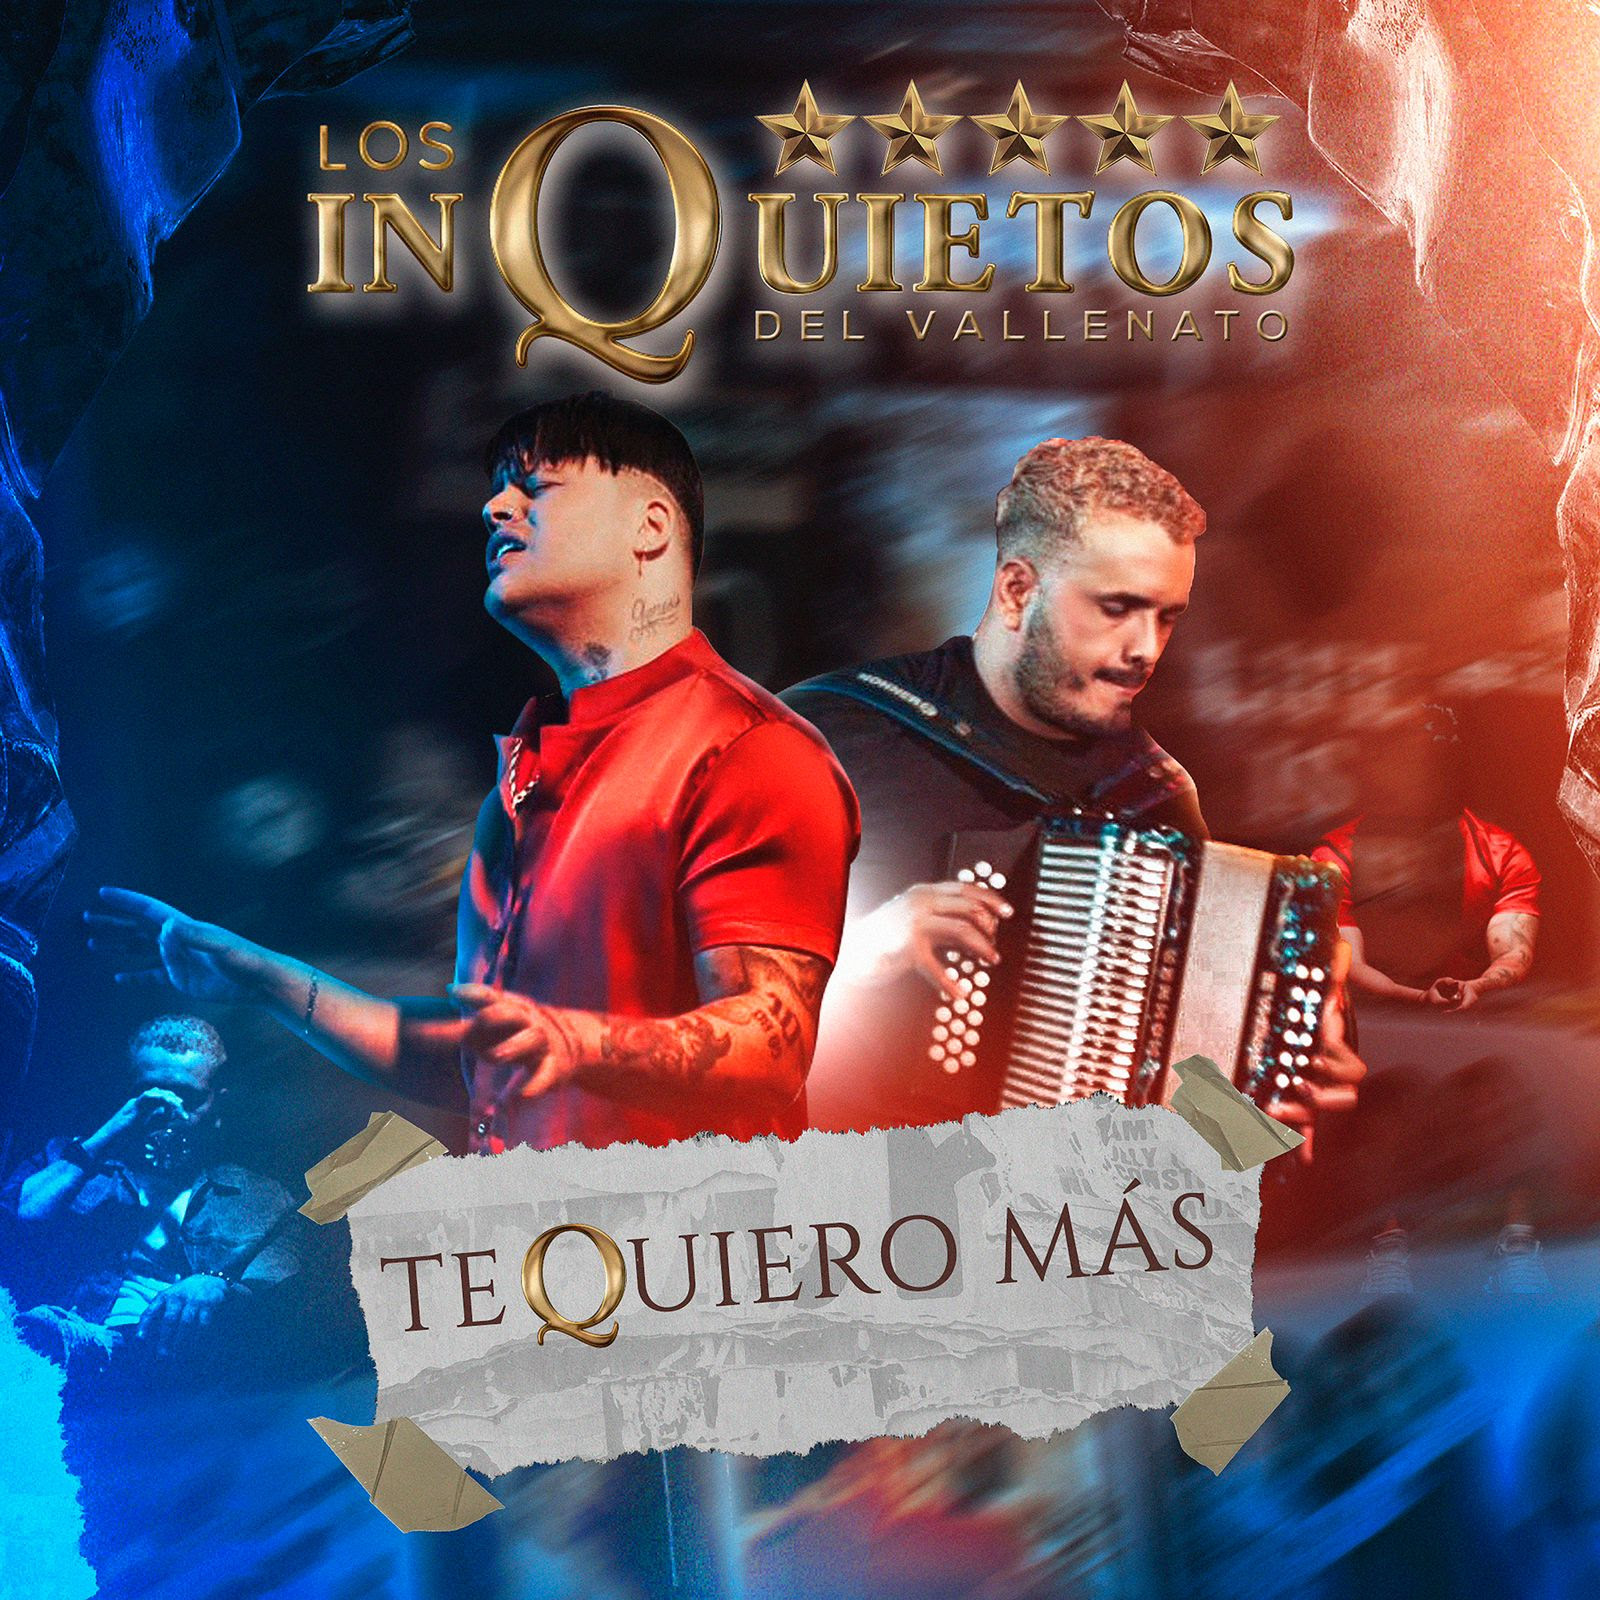 Codiscos y Los Inquietos del vallenato presentan “Te Quiero Más” su nuevo sencillo